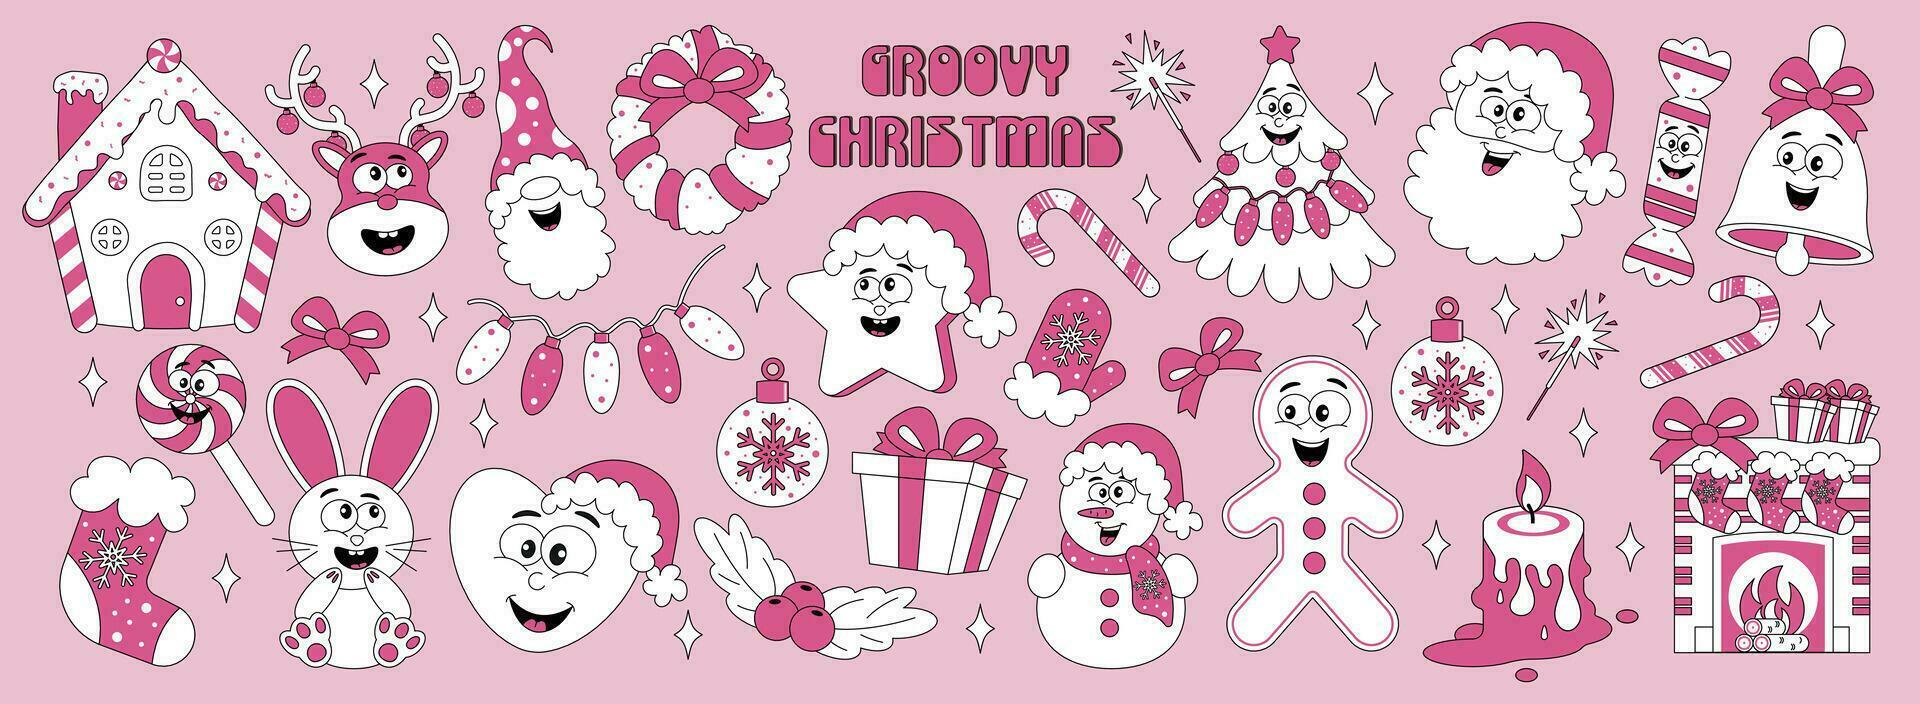 reeks van stickers met retro tekenfilm tekens nieuw jaar, kerstmis. vector illustratie in roze kleuren in jaren 80, 90s stijl.